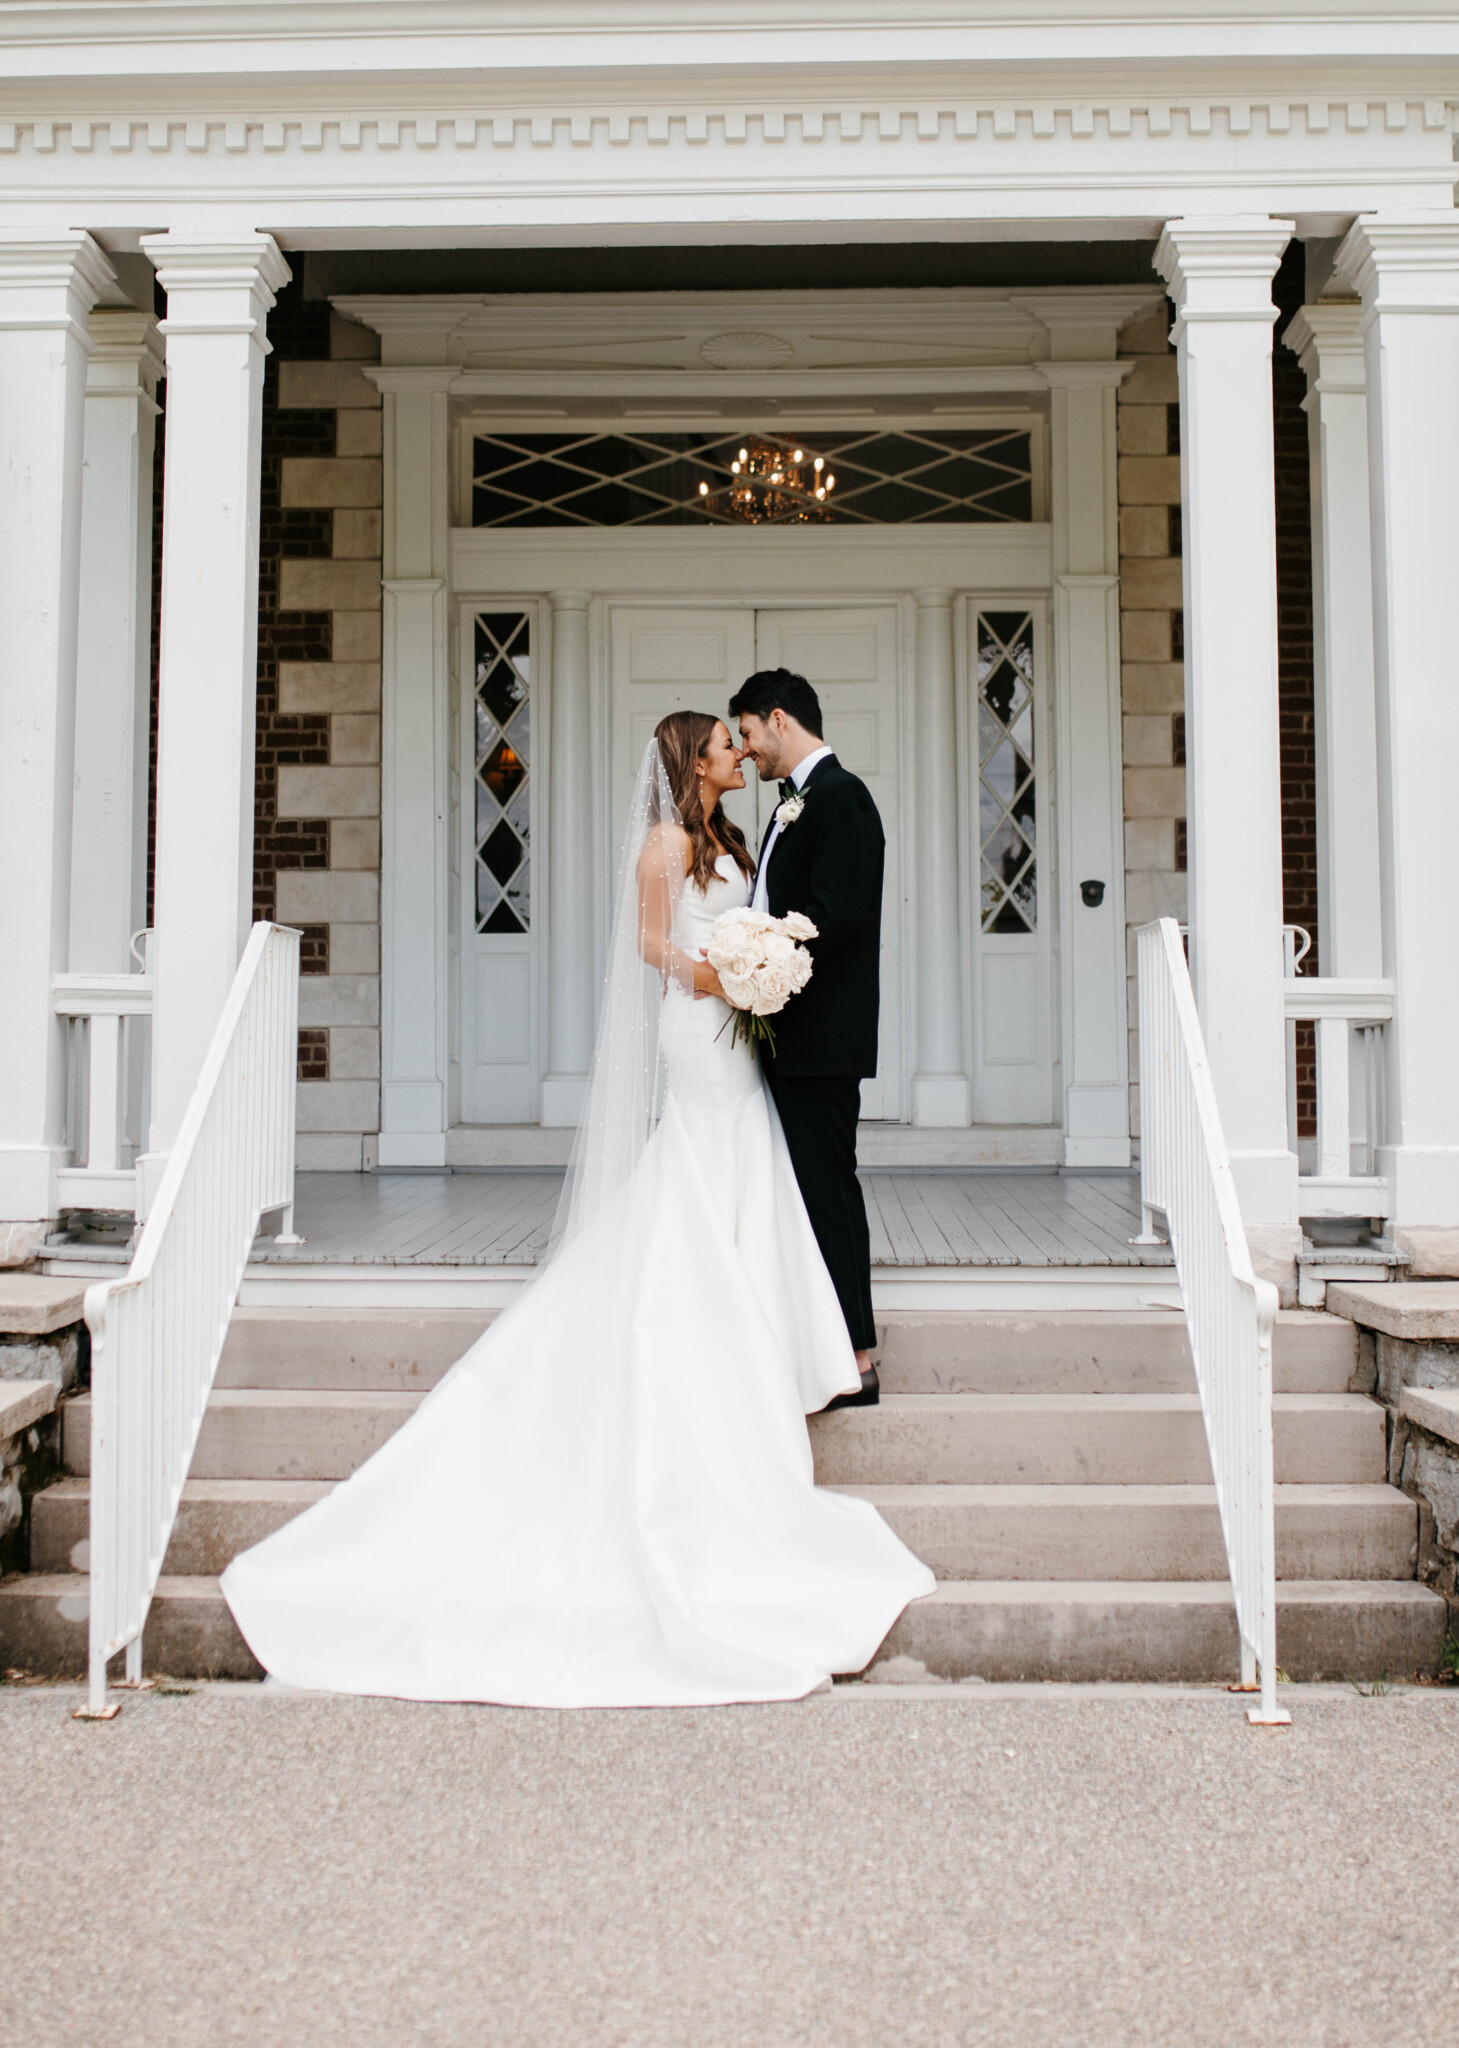 Simple Yet Elegant Wedding at Ravenswood Mansion